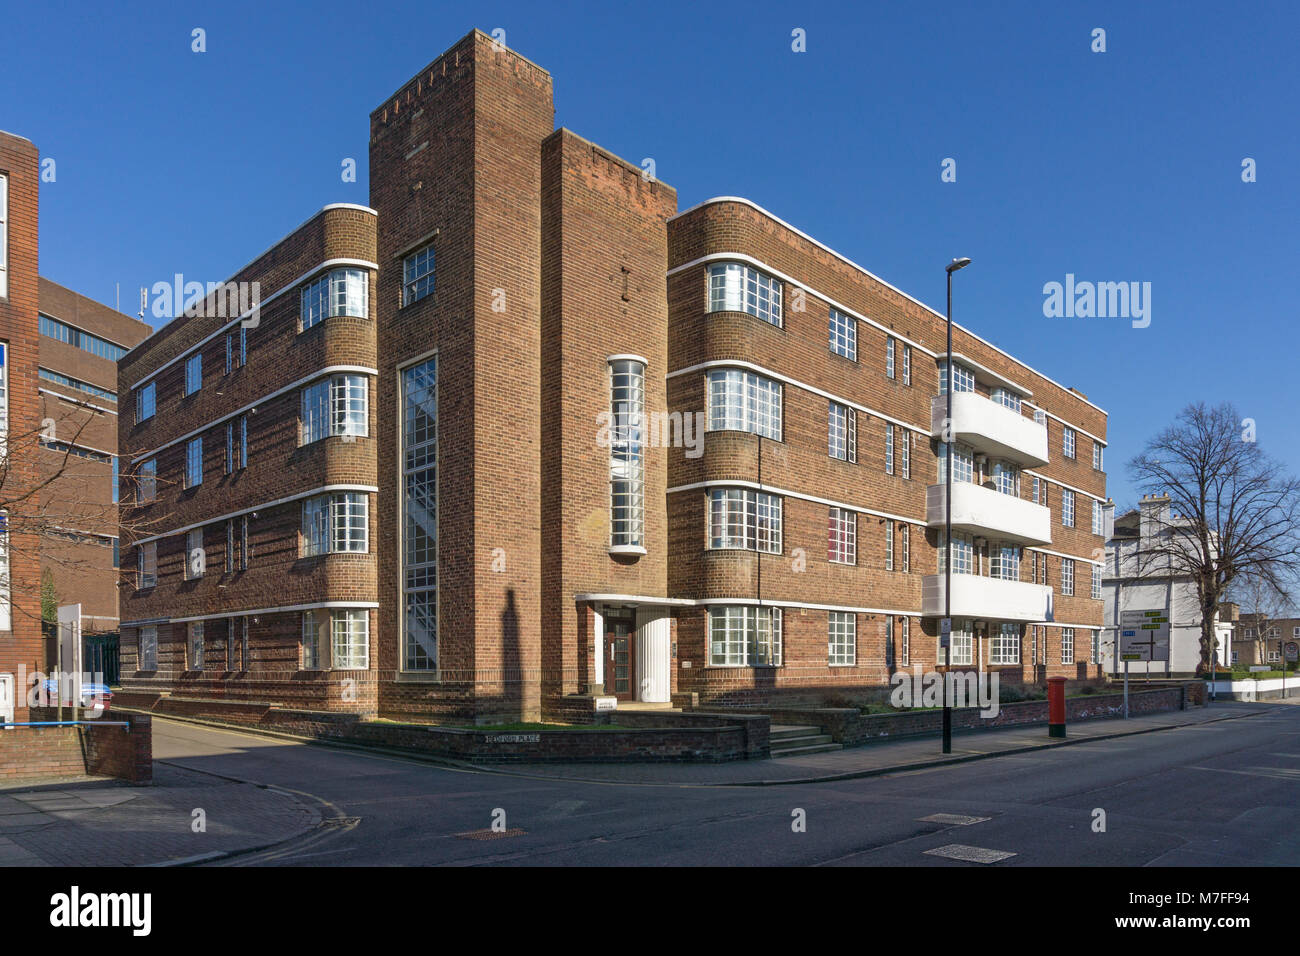 Bedford hôtels particuliers, un bloc d'appartements de 4 étages construite en 1935 à la société déco ; Derngate, Northampton, Royaume-Uni Banque D'Images